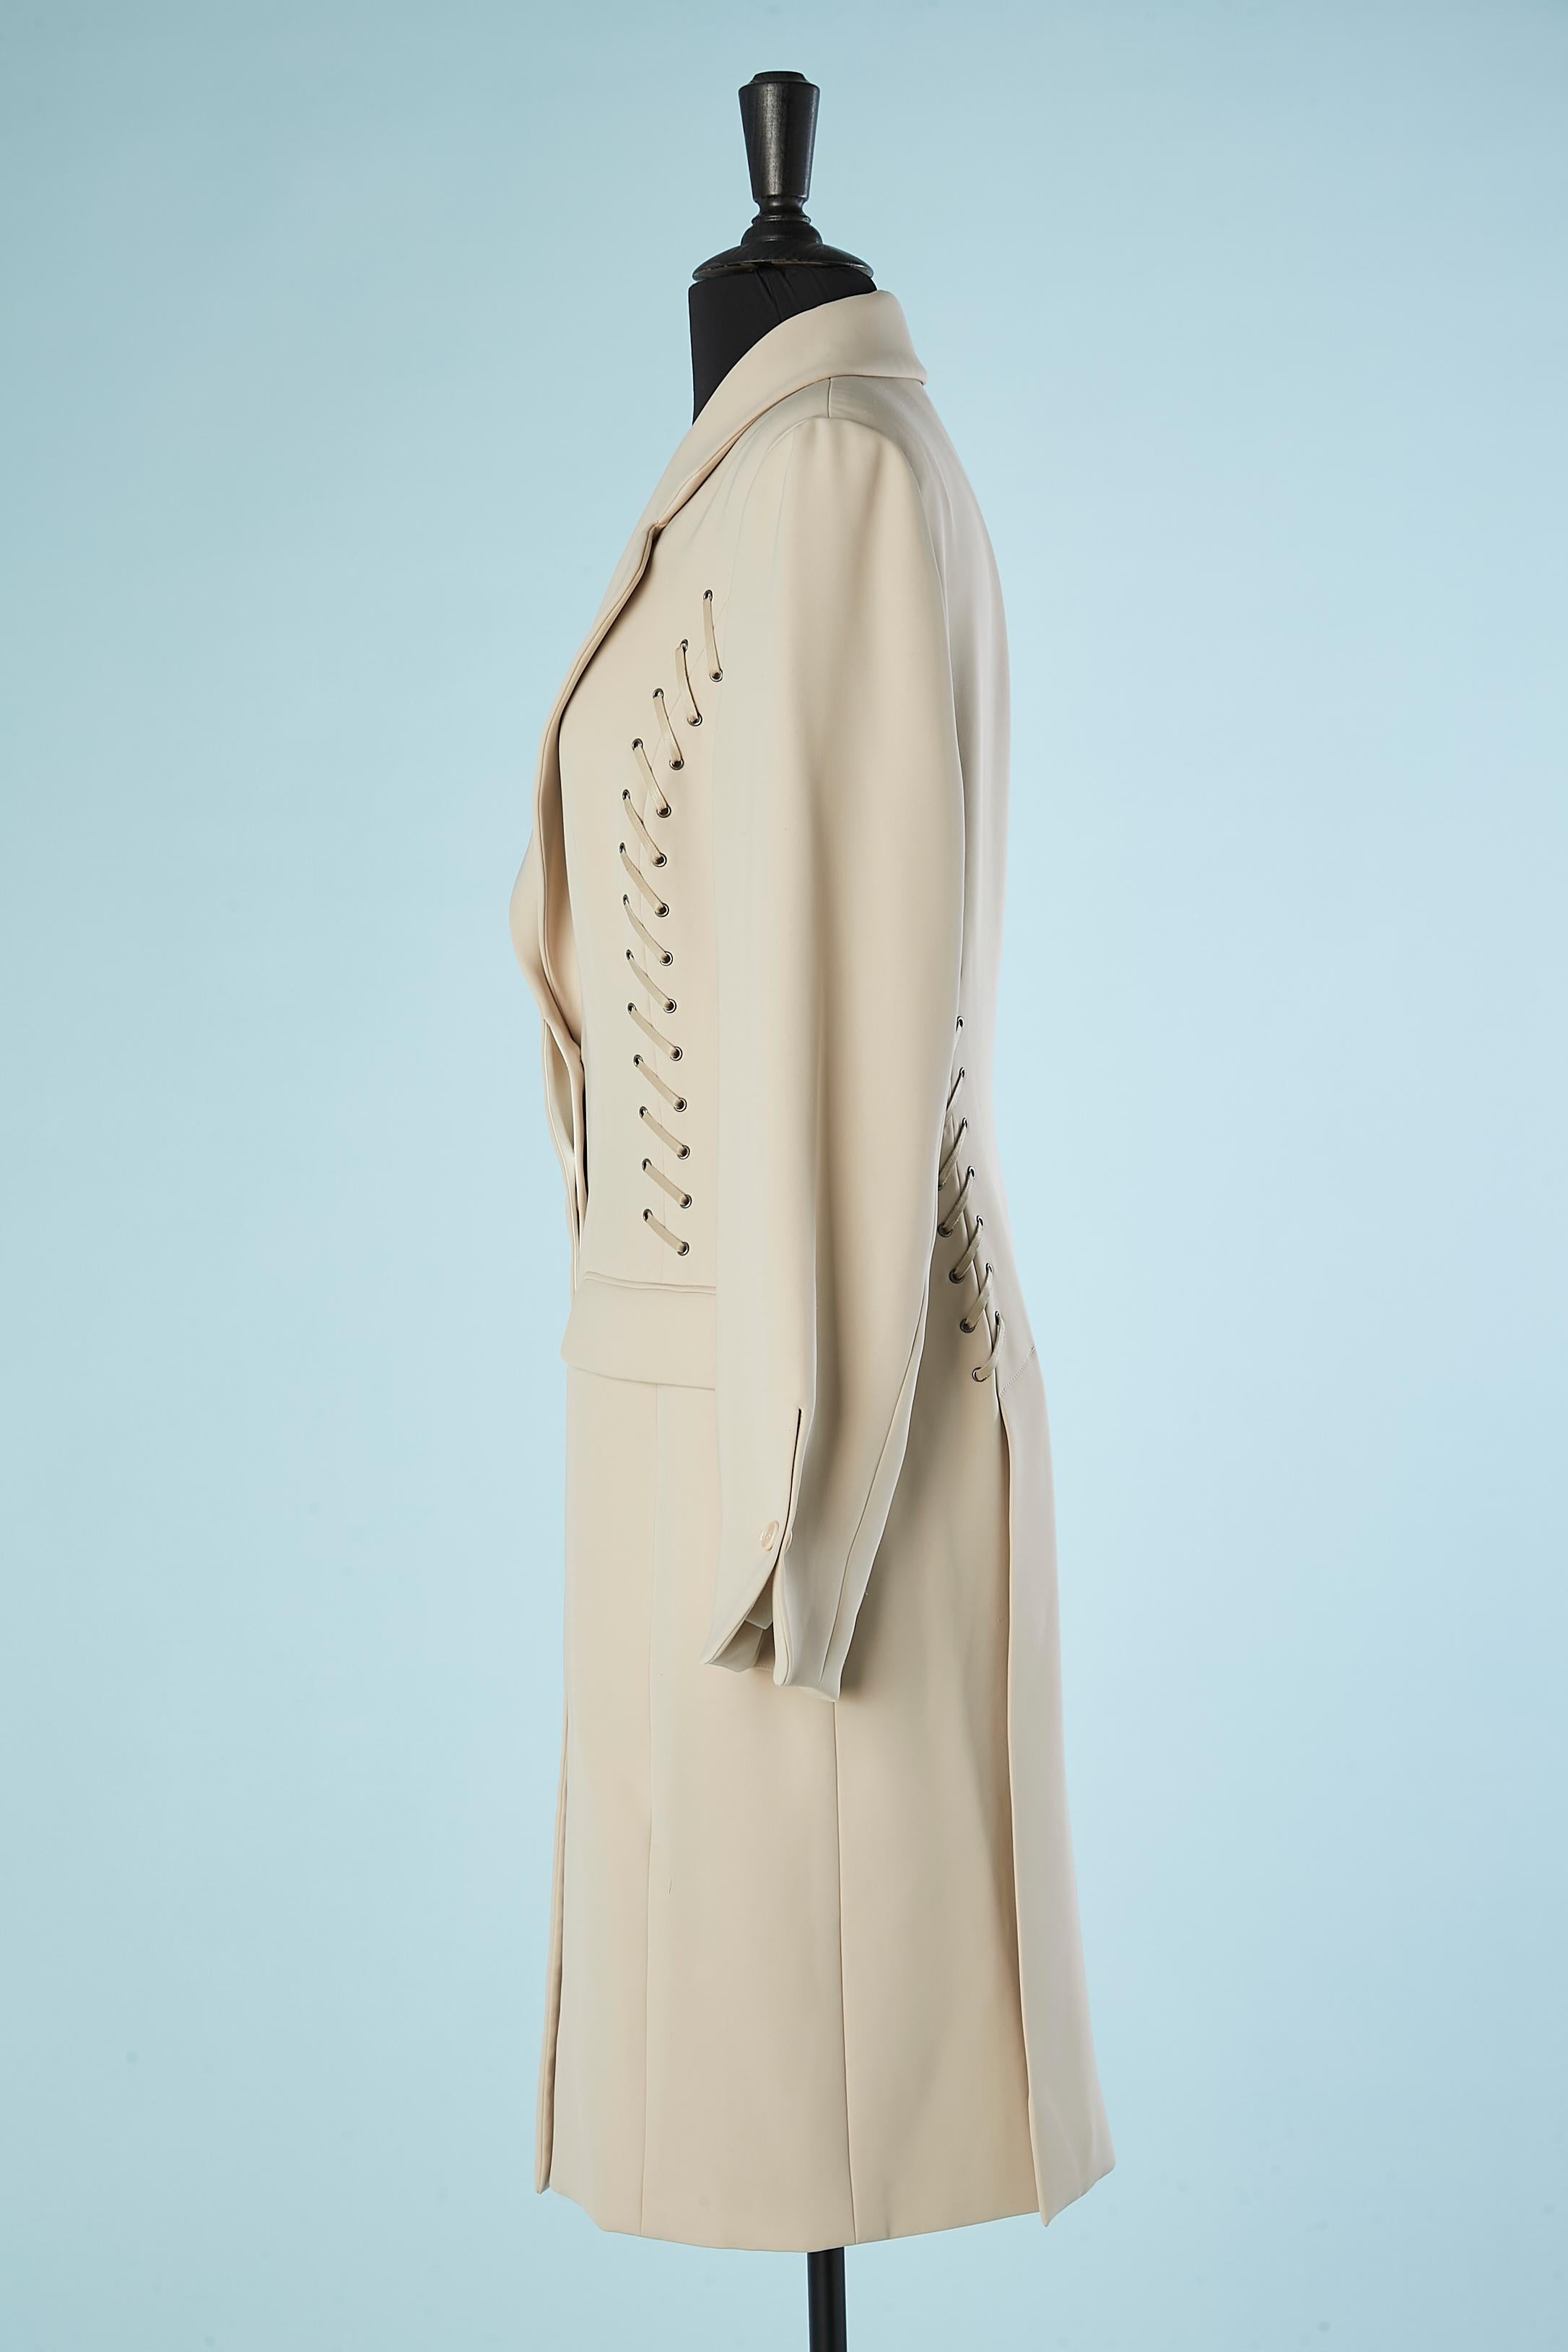 Paco Rabanne - Manteau gris avec rubans de cuir gris laqués à l'avant et à l'arrière  Pour femmes en vente